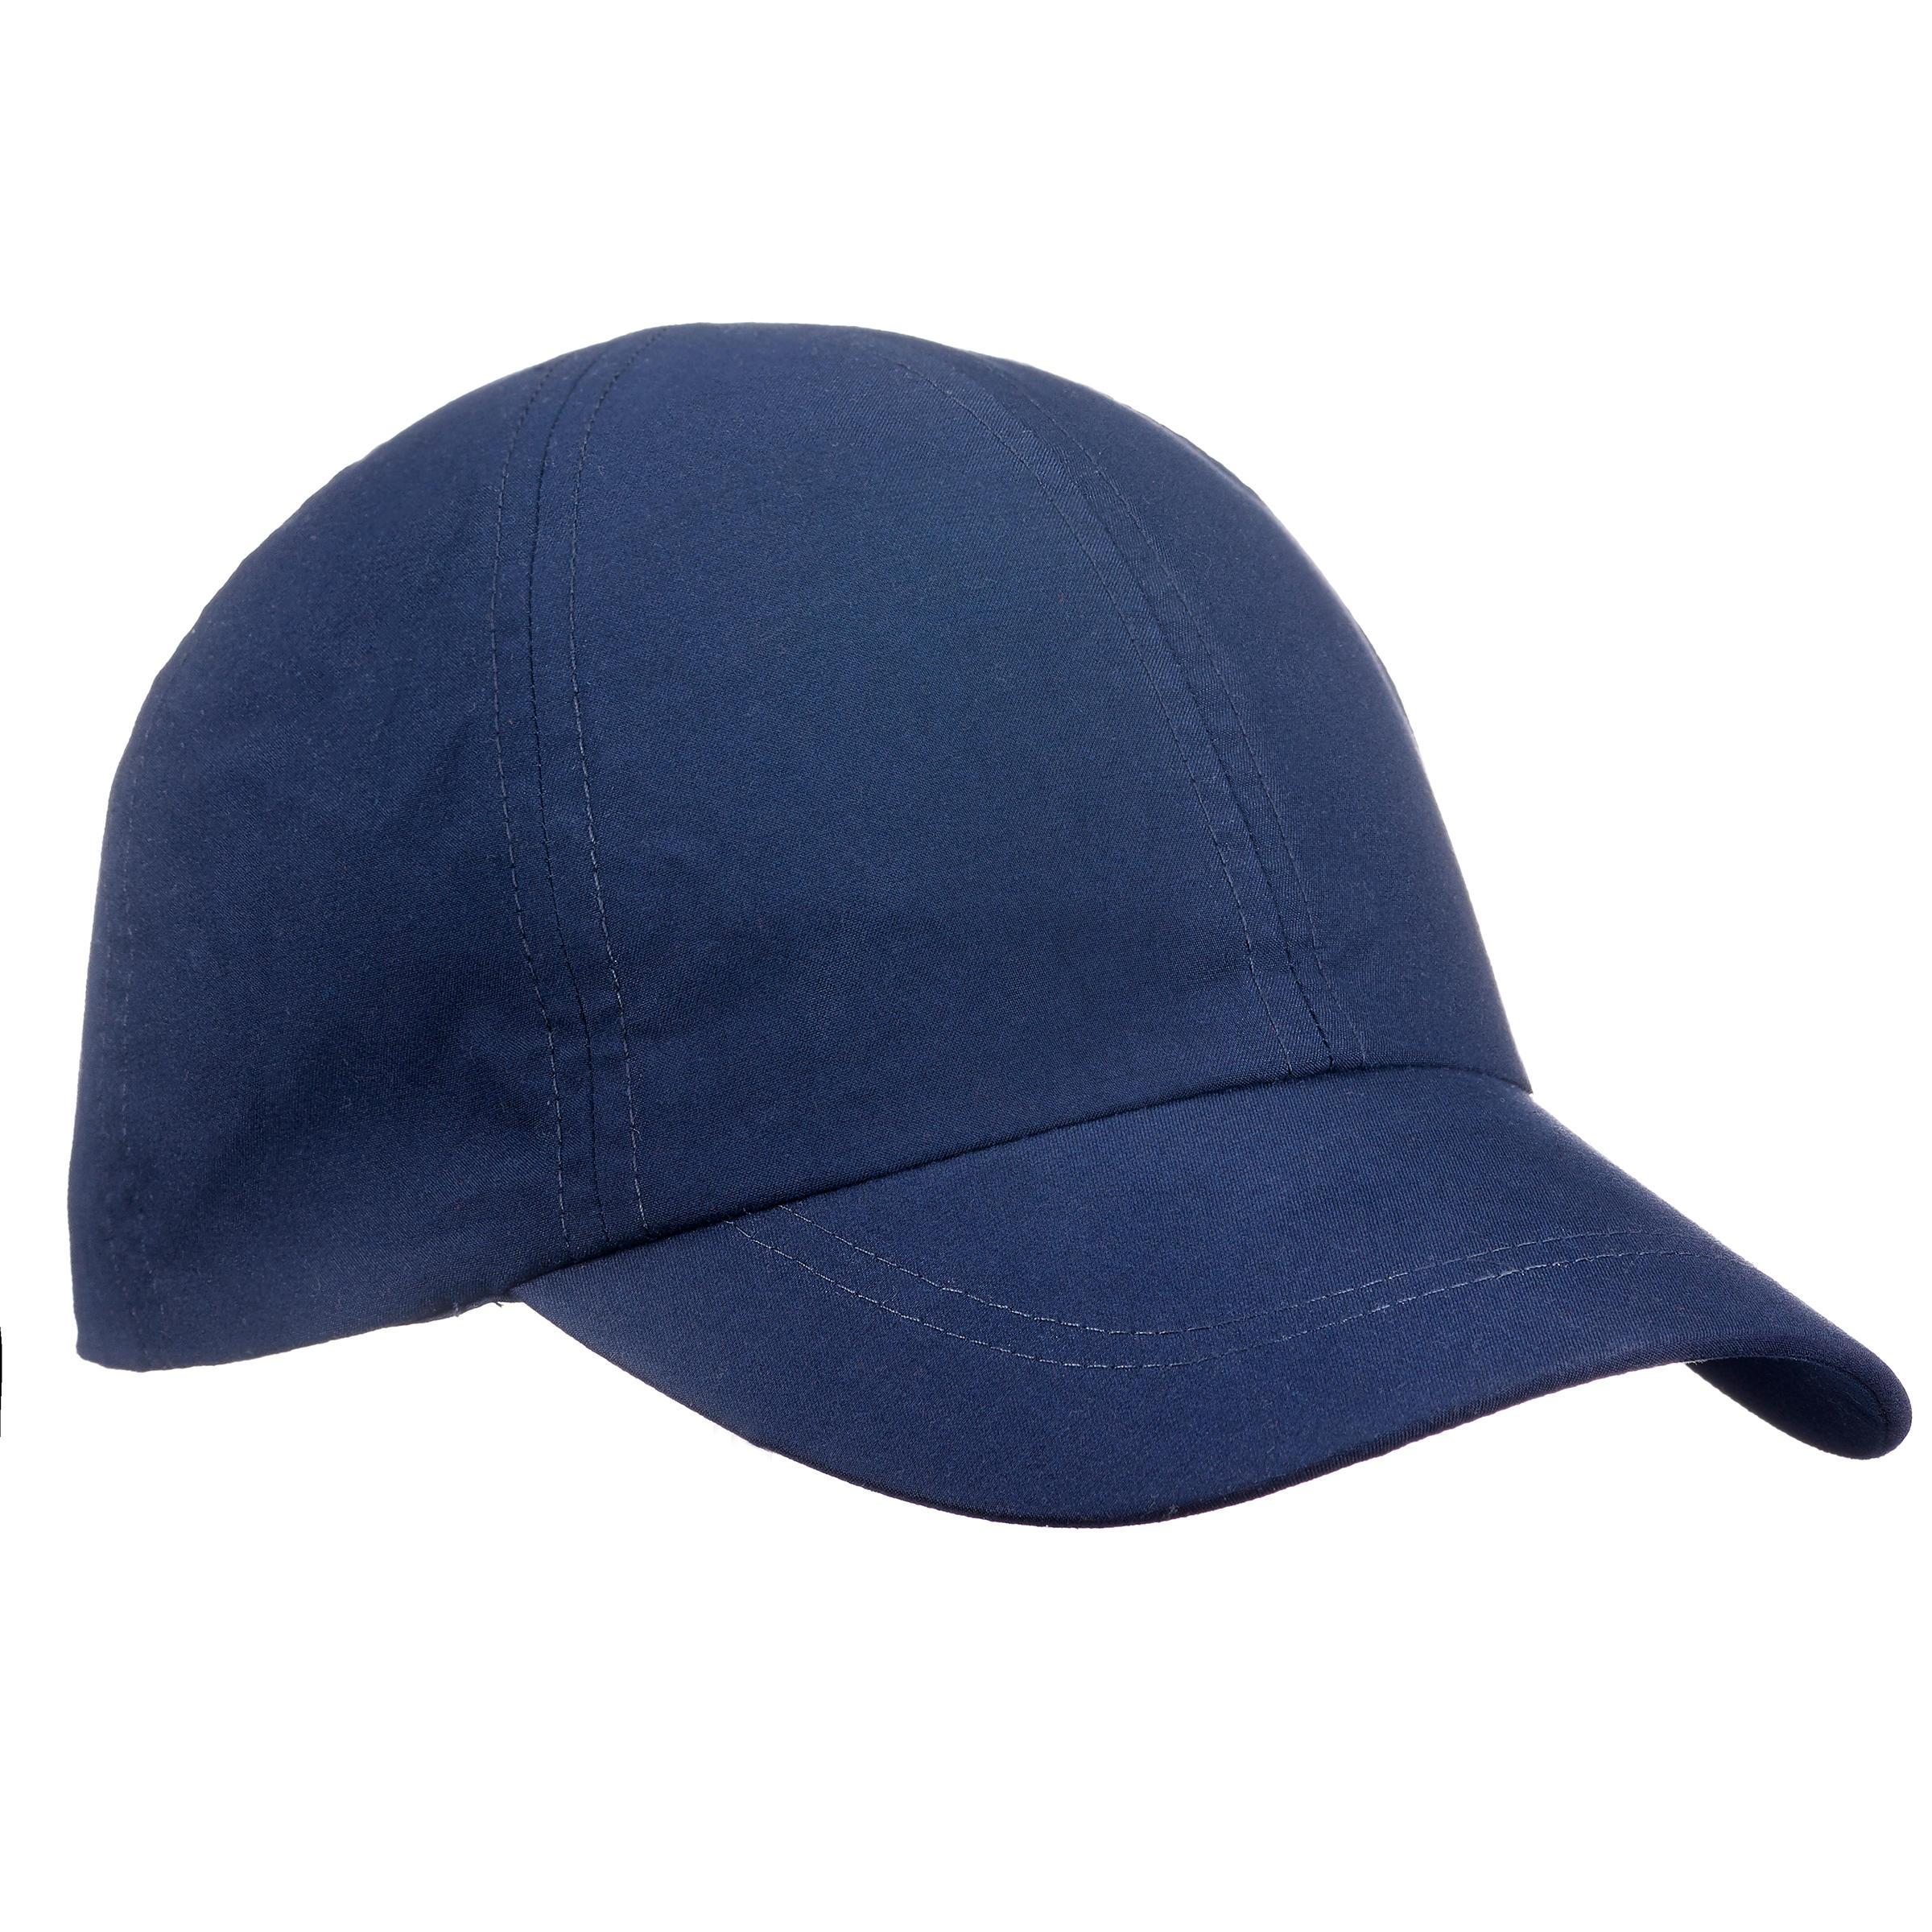 [ด่วน!! โปรโมชั่นมีจำนวนจำกัด]หมวกสำหรับการเทรคกิ้งบนภูเขารุ่น TREK 100 (สีฟ้า)